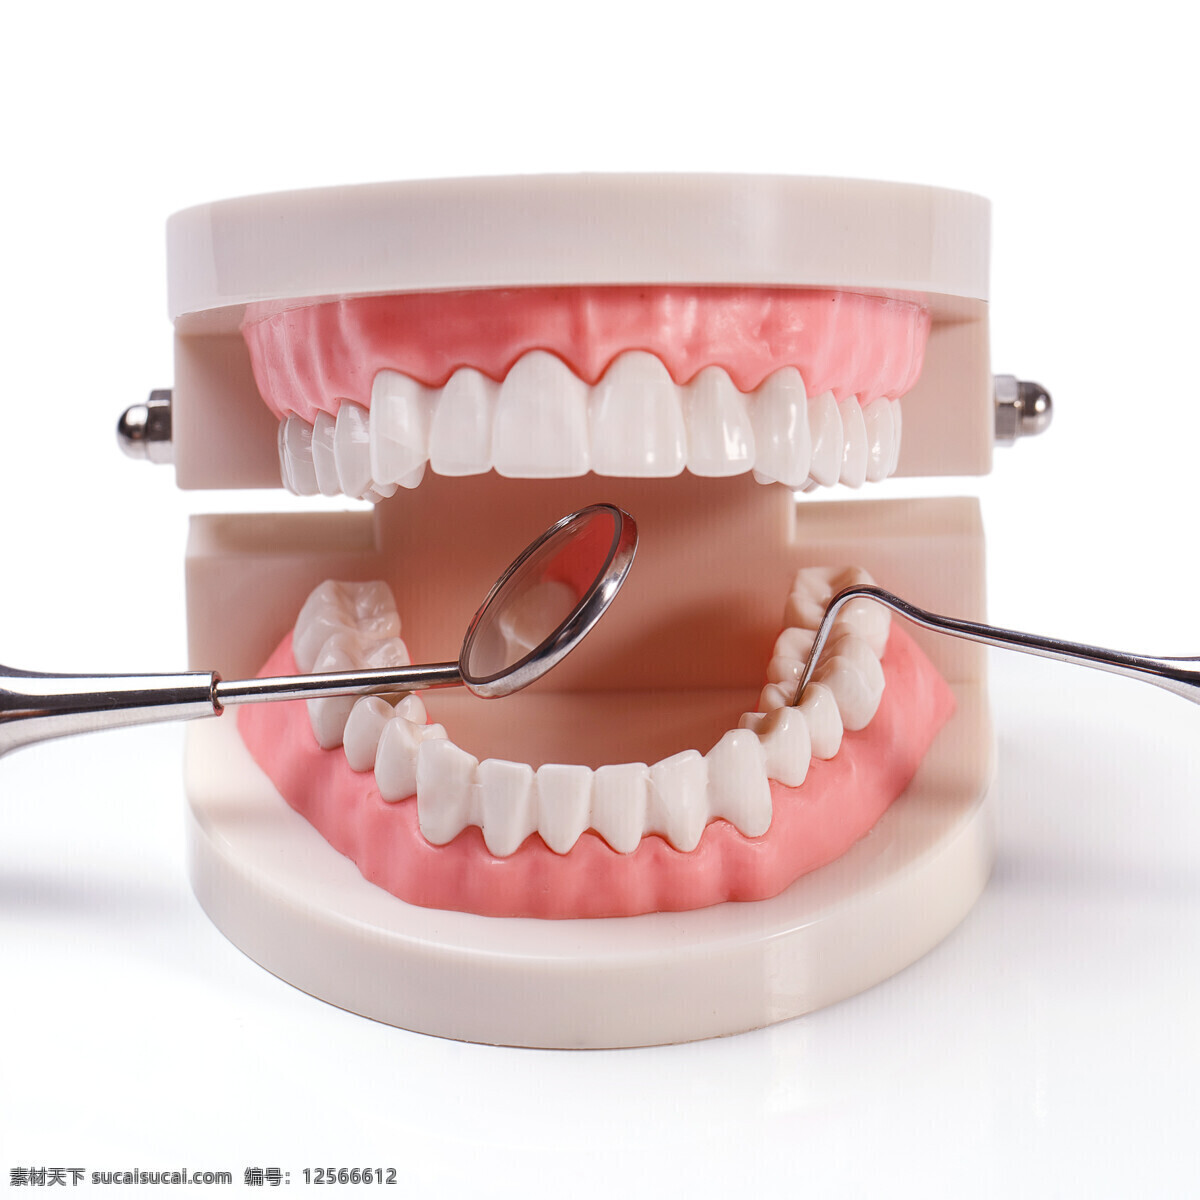 口腔 医疗 牙齿 模型 牙齿器械 牙科 口腔医疗 牙齿医疗 医疗科技 医疗护理 现代科技